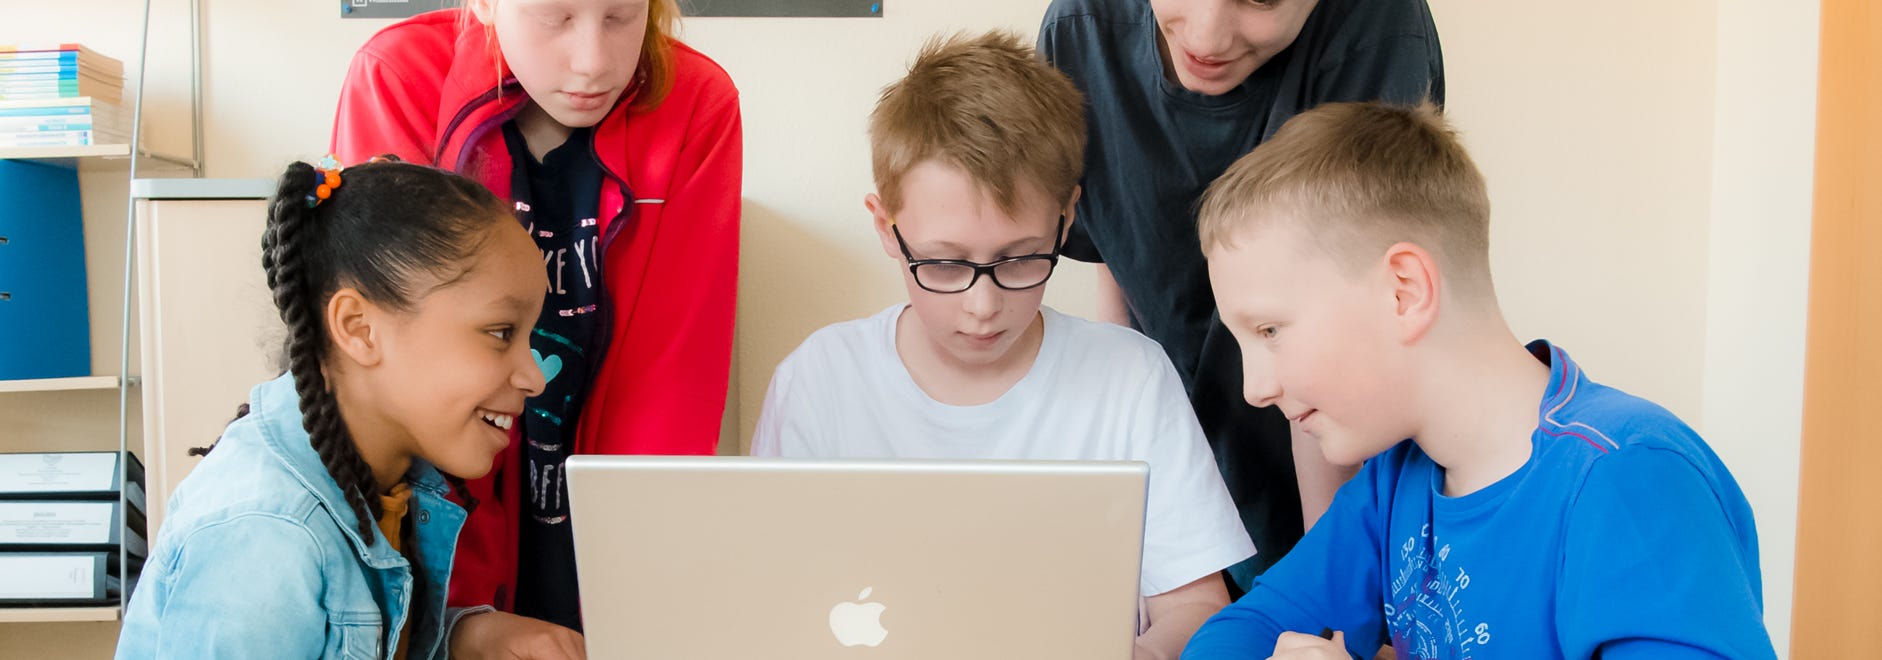 Junge mit Laptop beim Online lernen